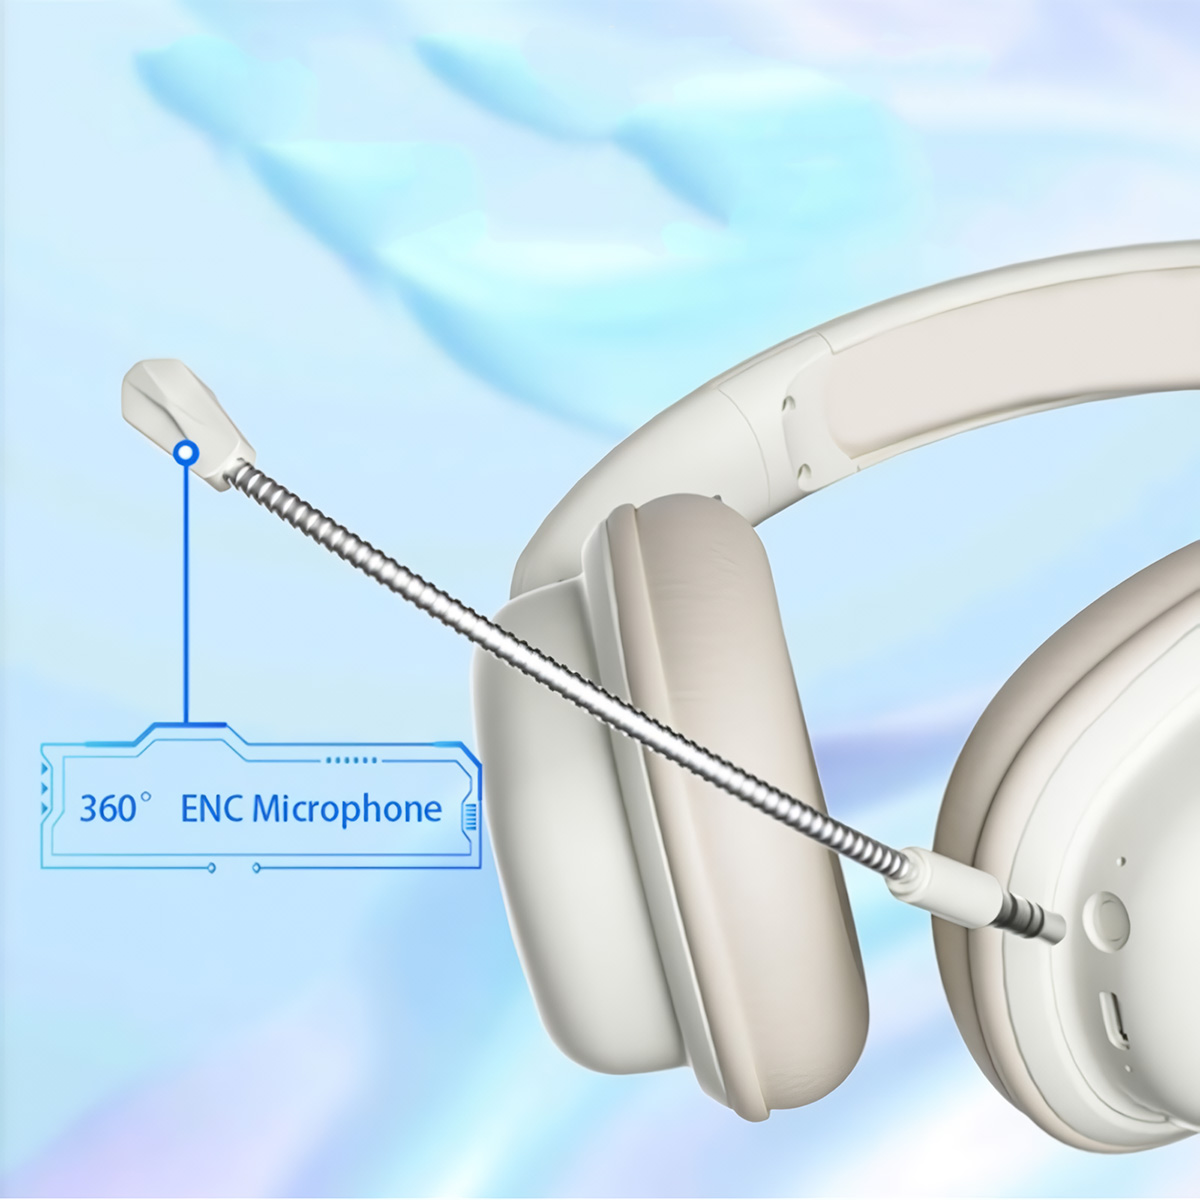 Auriculares Bluetooth Klack Sy-t1 Plegables Micrófono 20h De Autonomía  MKP